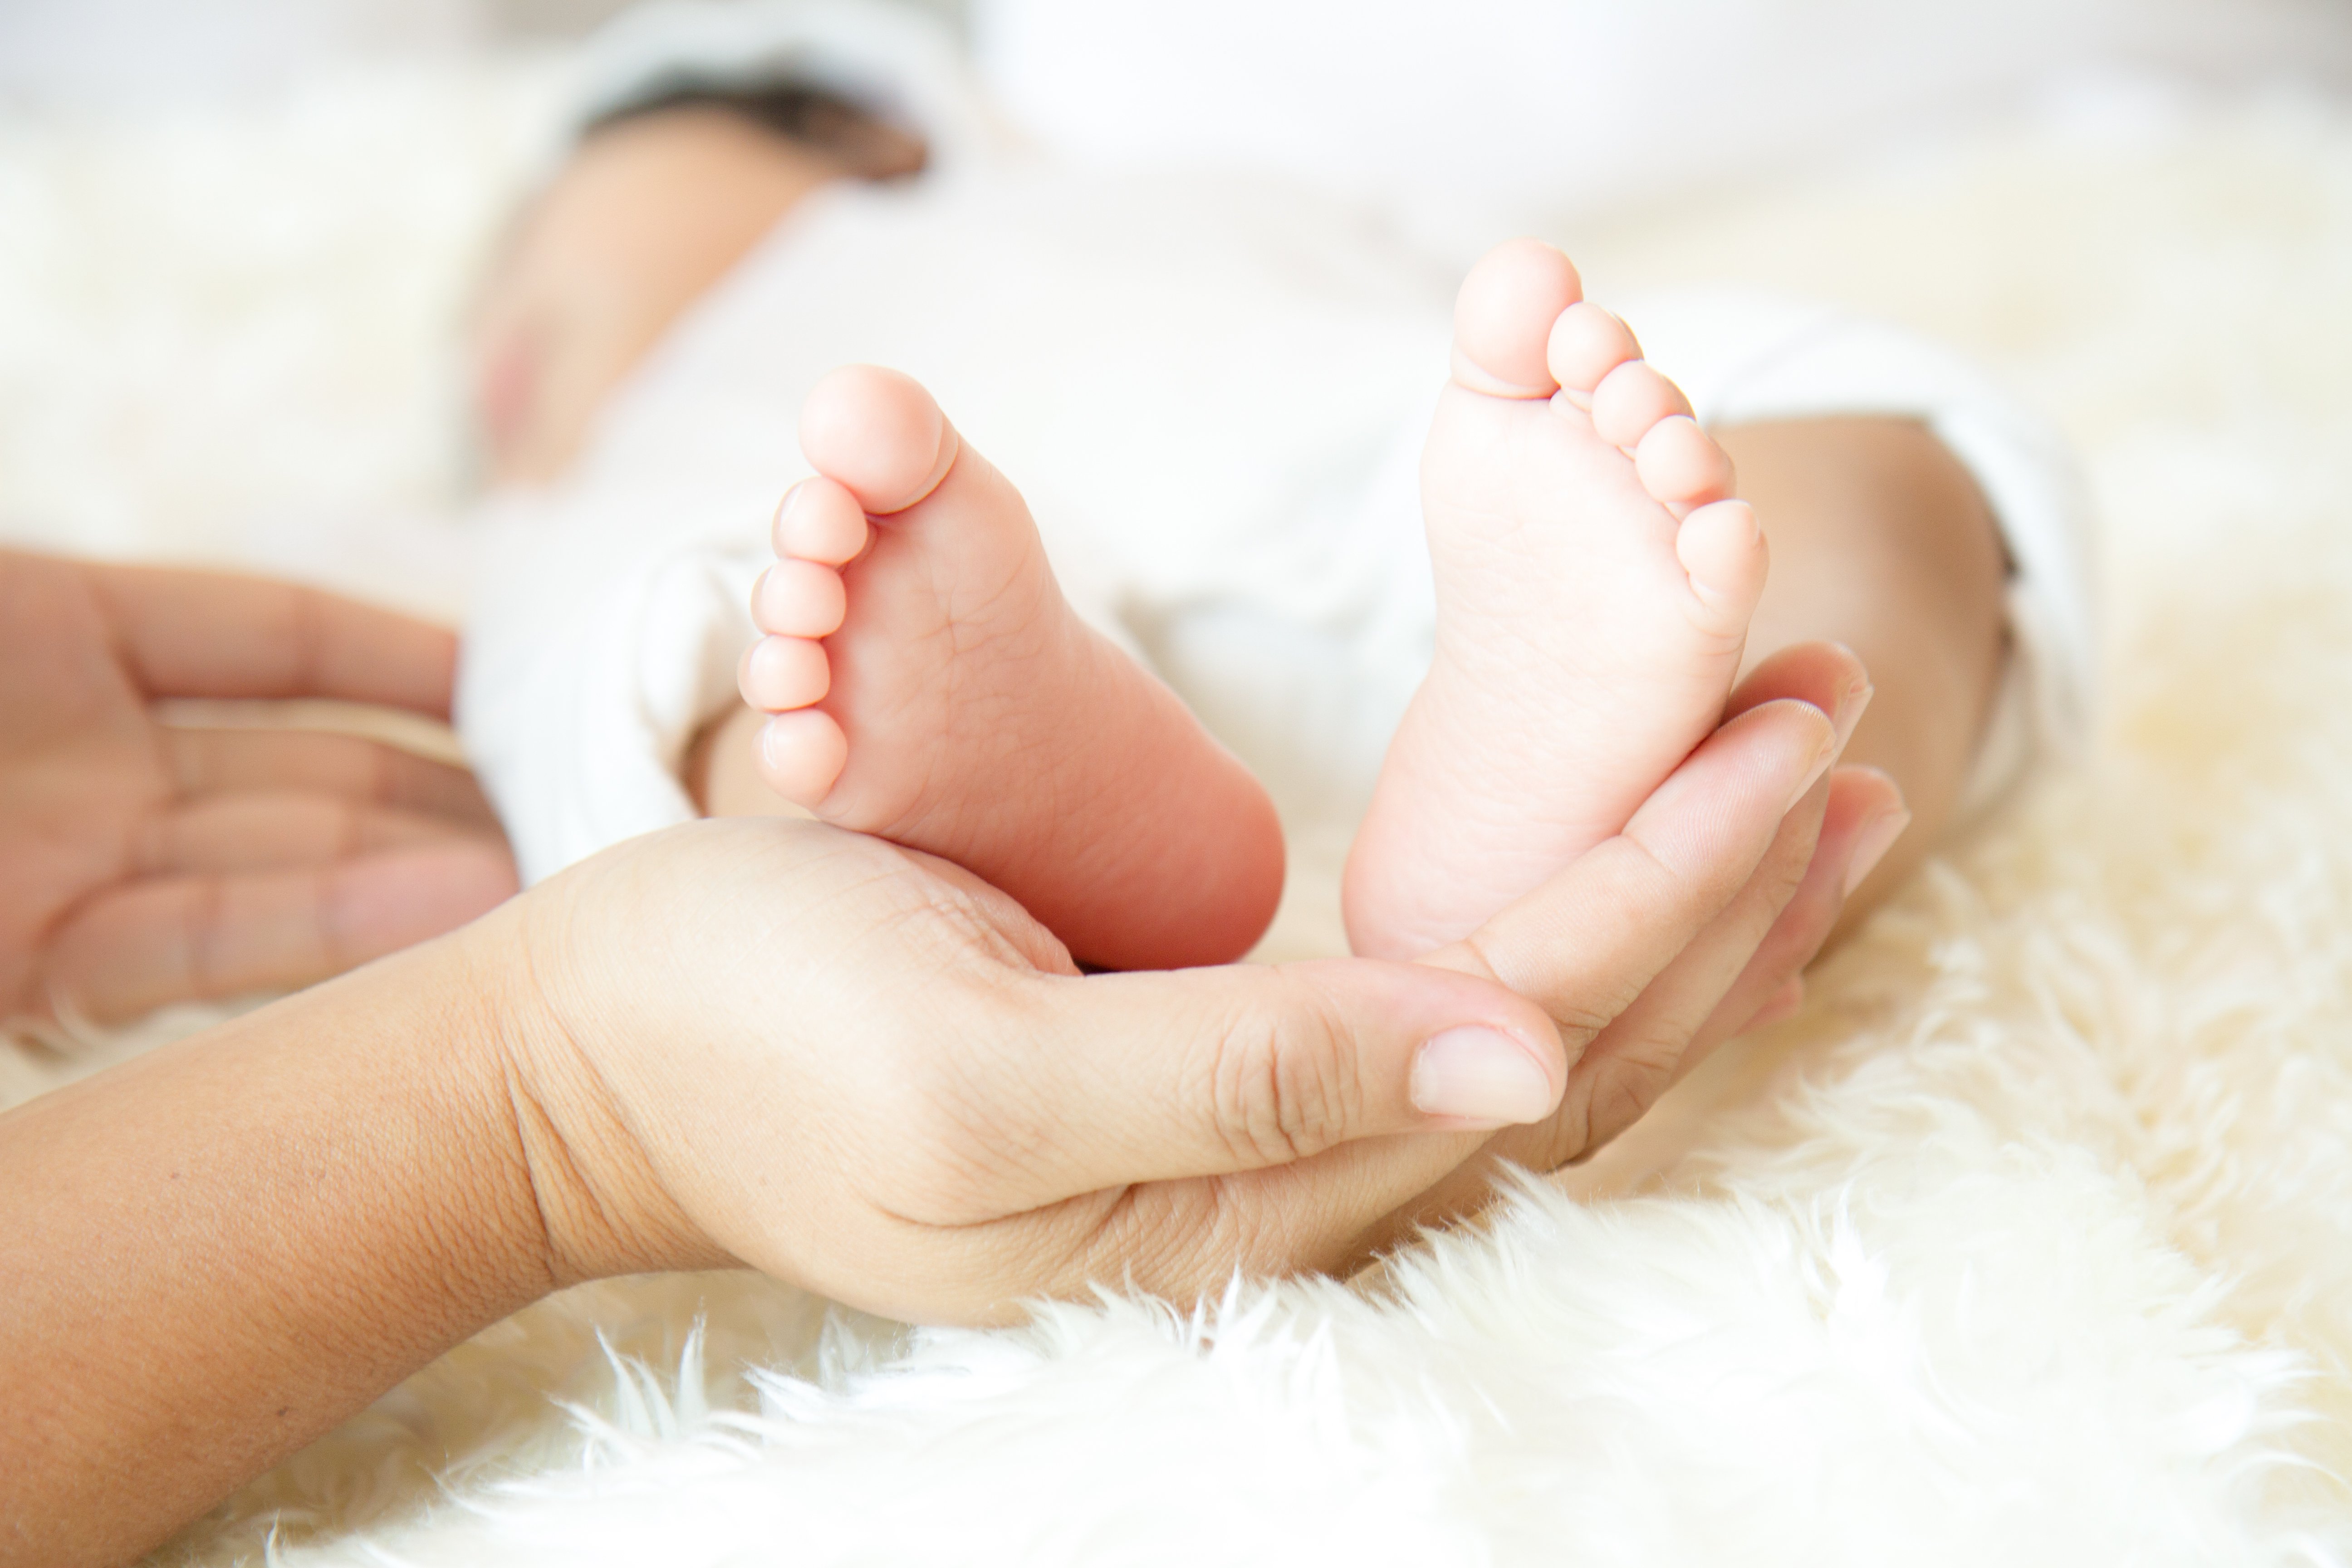 Piés de bebé en manos de su madre | Foto: Shutterstock